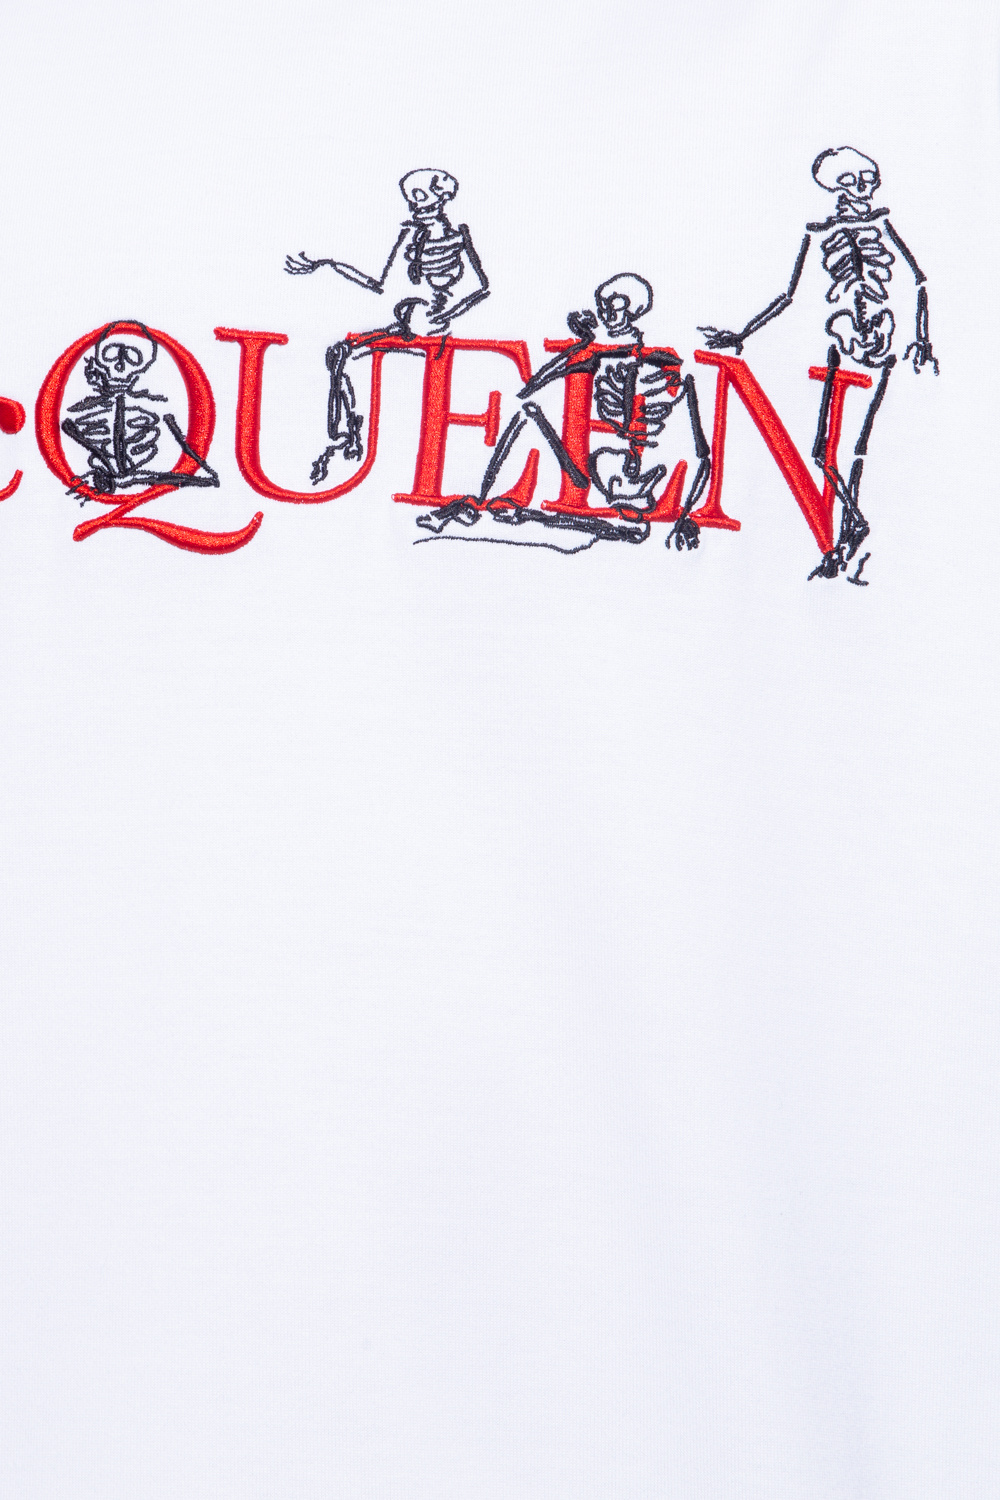 Alexander McQueen Logo T-shirt